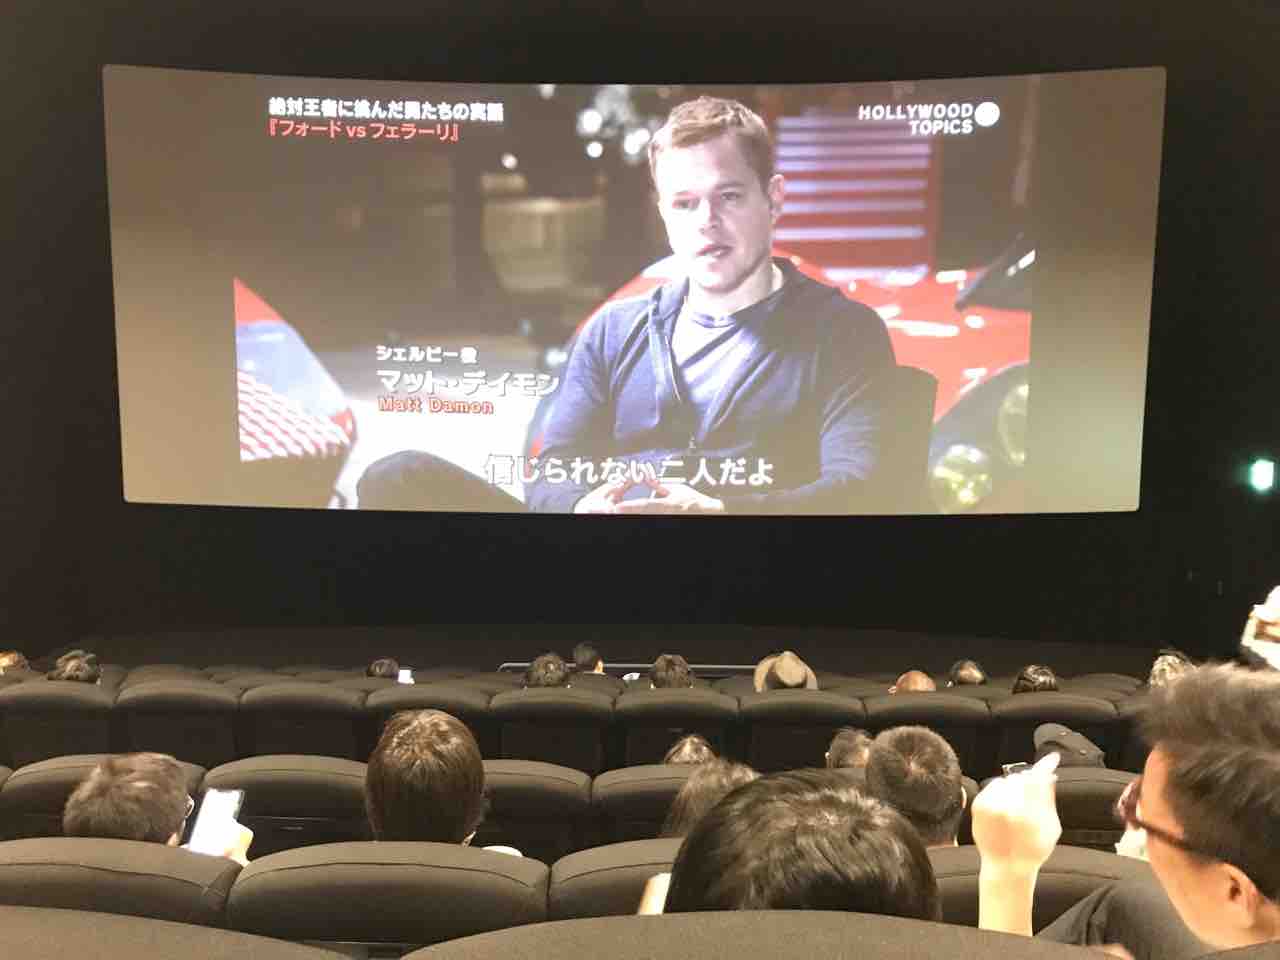 Tohoシネマズ上野 スクリーン8 座席表のおすすめの見やすい席 トーキョー映画館番長